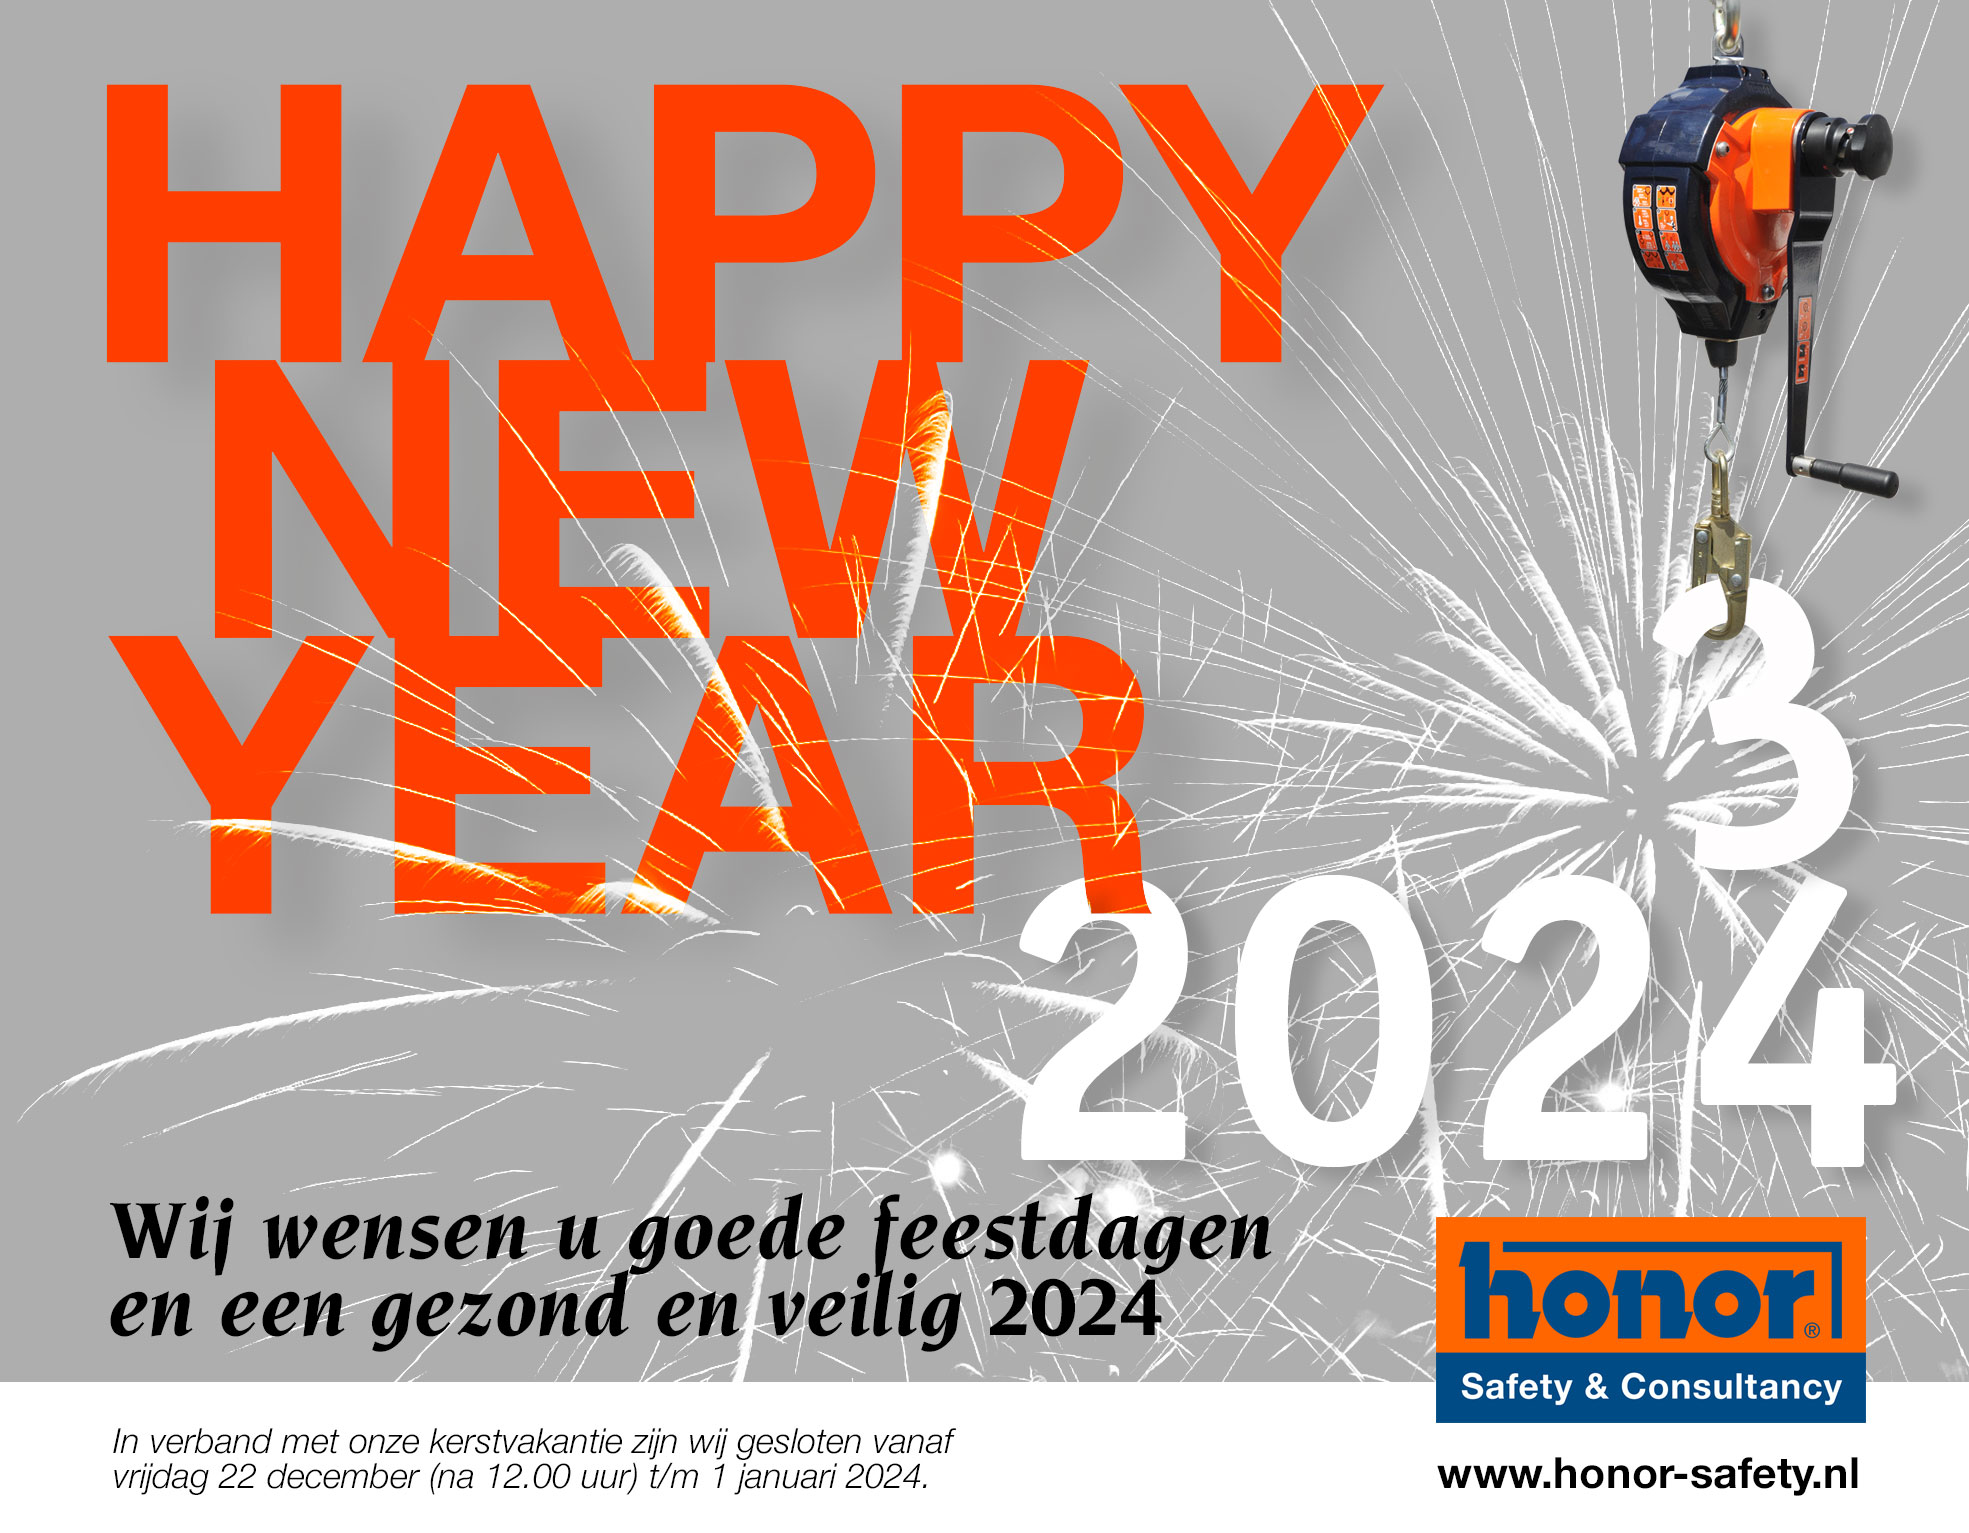 HappyNewYear HONOR Safety 2023 2024 NL 